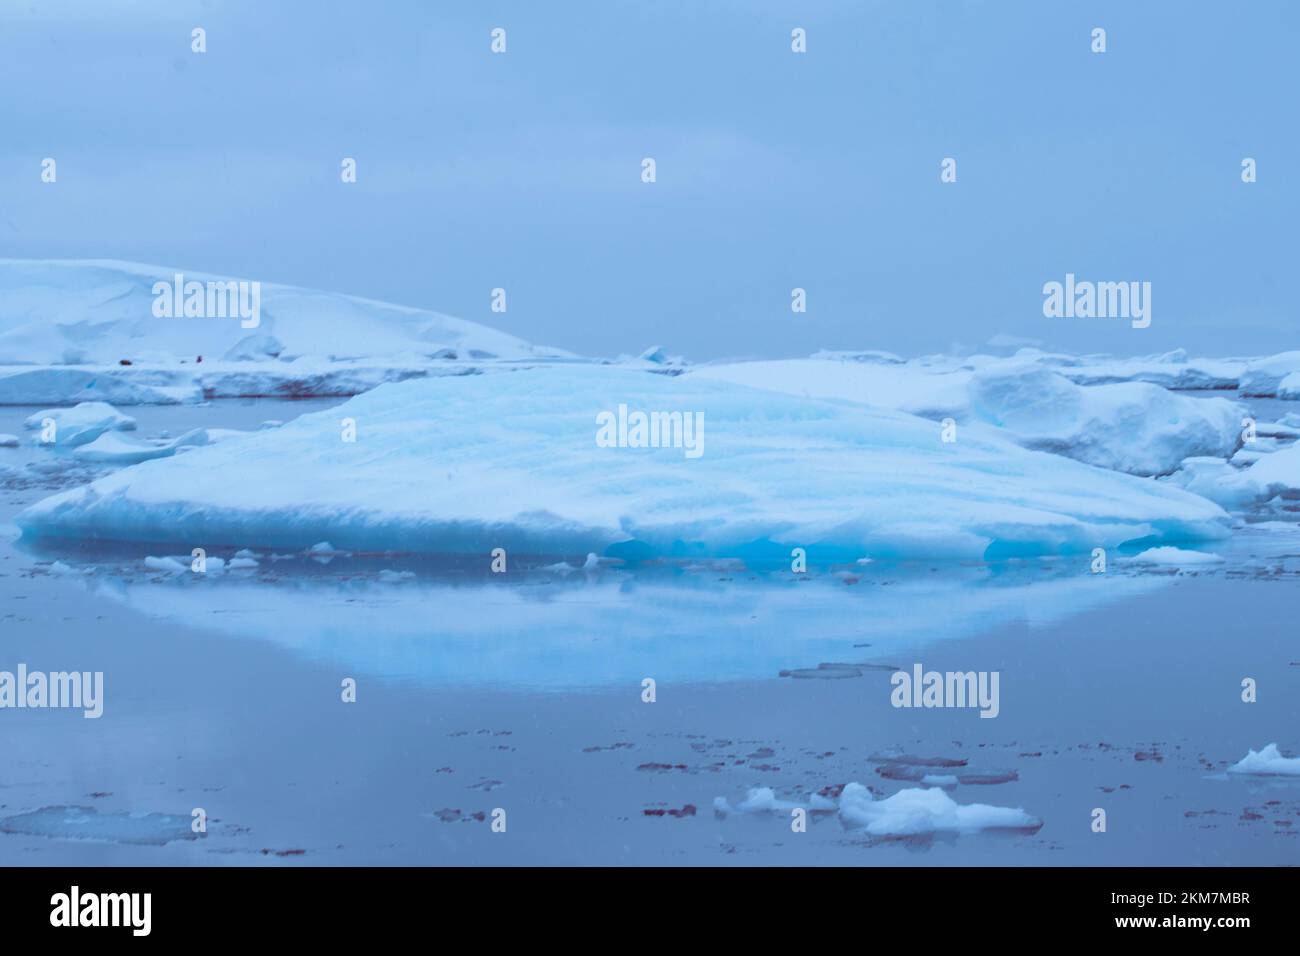 Las fiebres de hielo y los icebergs que fluyen en el océano Antártico. Con capas de hielo y nieve que crean los icebergs. Foto de stock